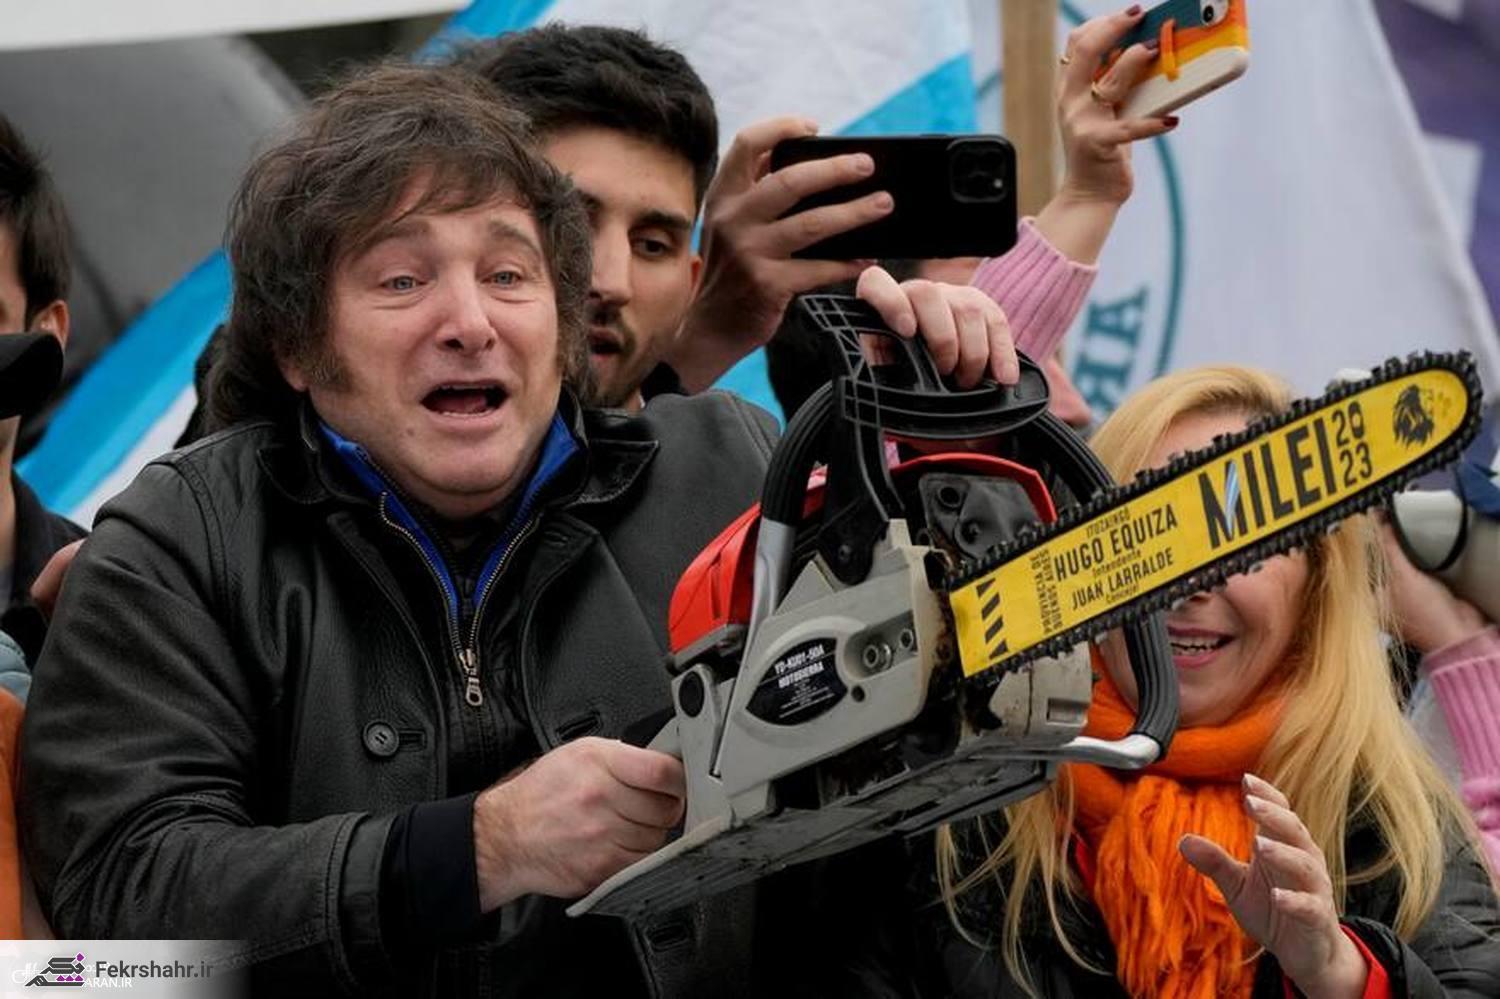 با رئیس جمهور جدید و متفاوت آرژانتین آشنا شوید/ مردی که عاشق اره کردن است + تصاویر